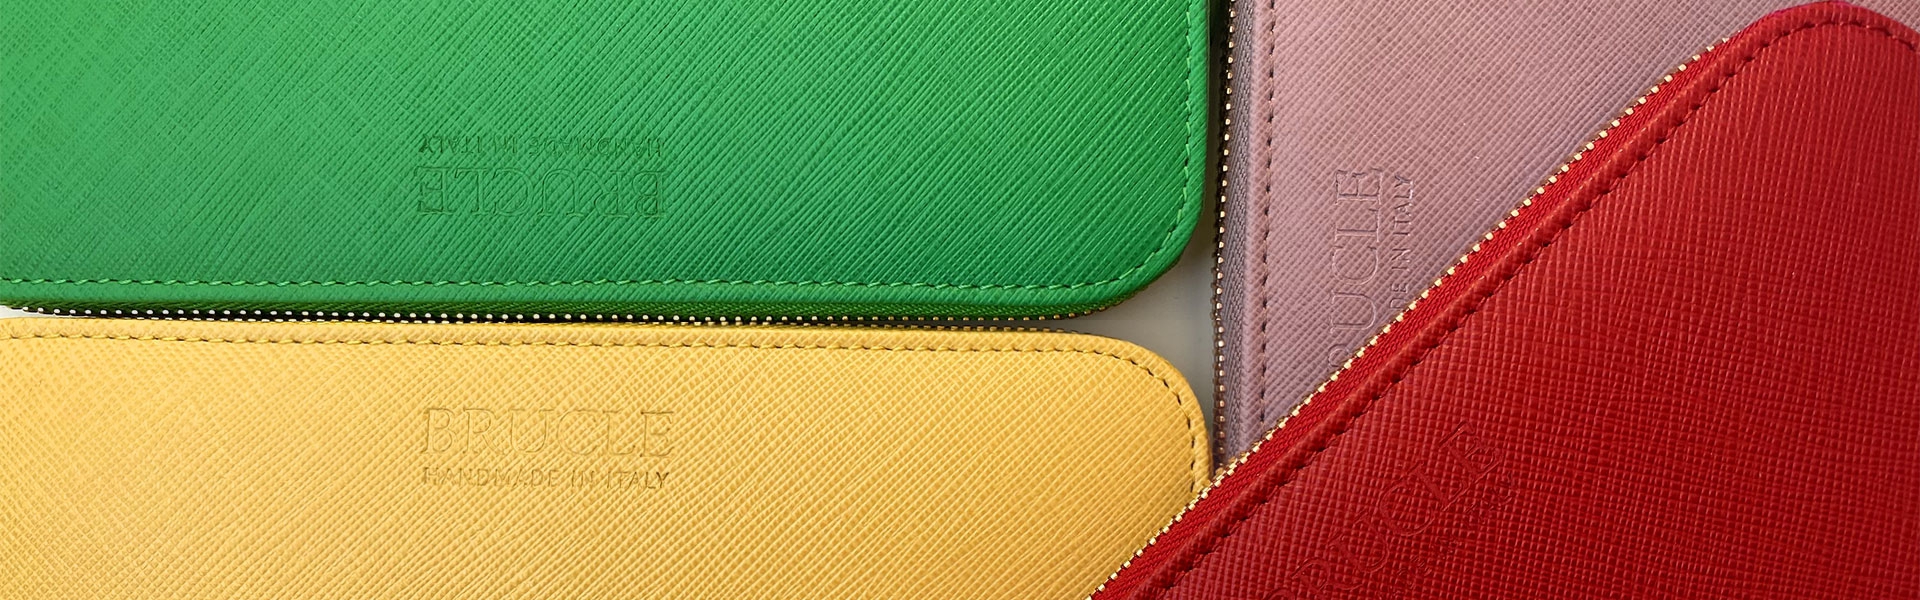 BETLEWSKI® Portefeuille pour femme en cuir véritable RFID Portefeuille en cuir marron Avec boîte cadeau Très belles couleurs avec de nombreux compartiments 